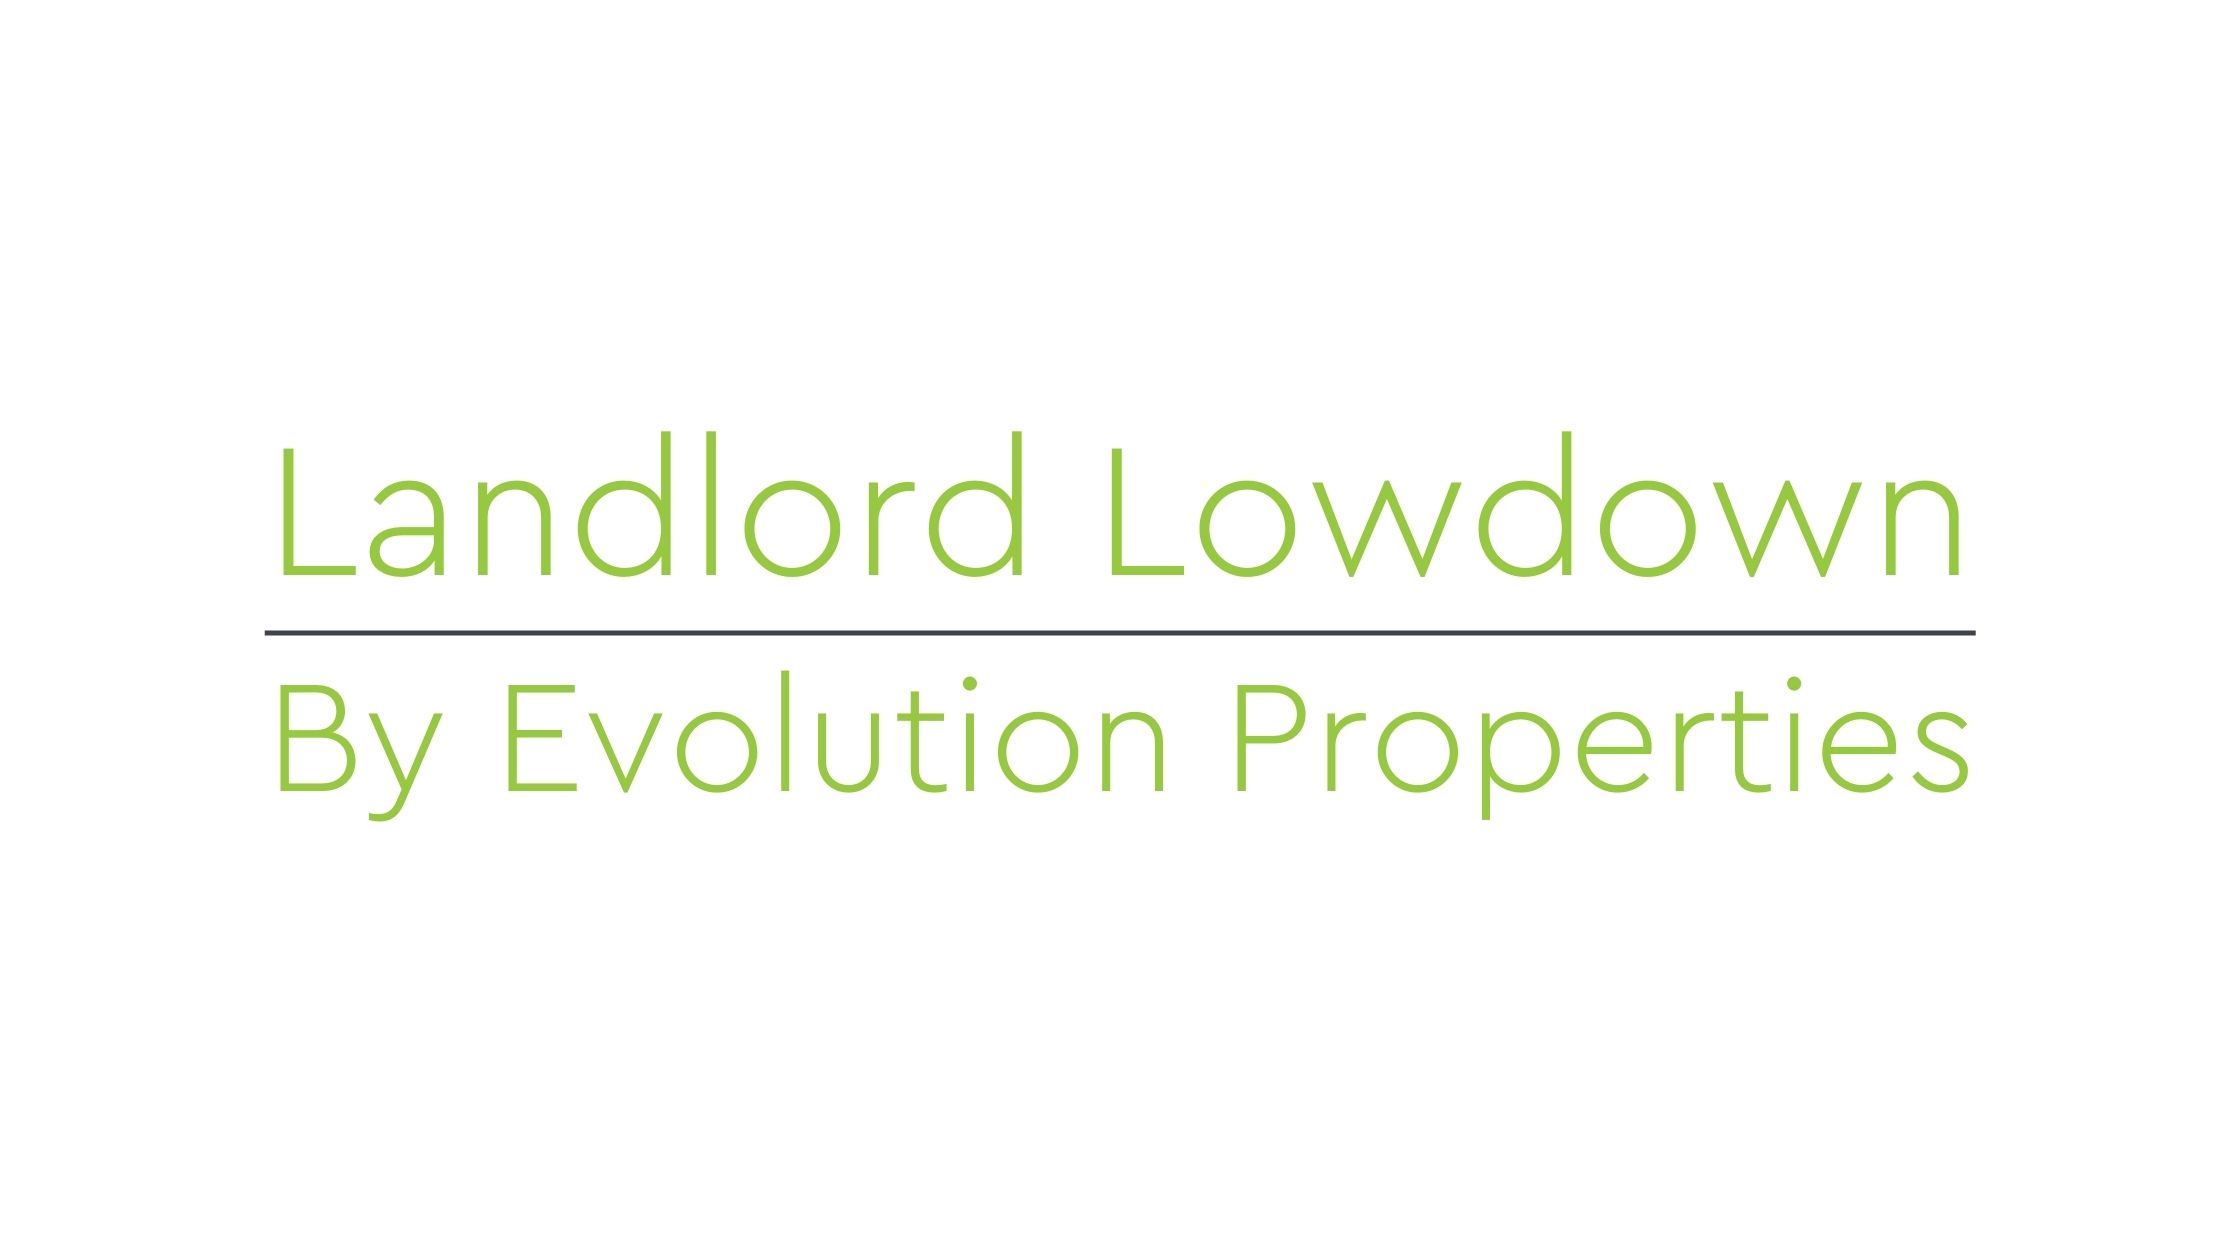 Landlord Lowdown for Ashford!